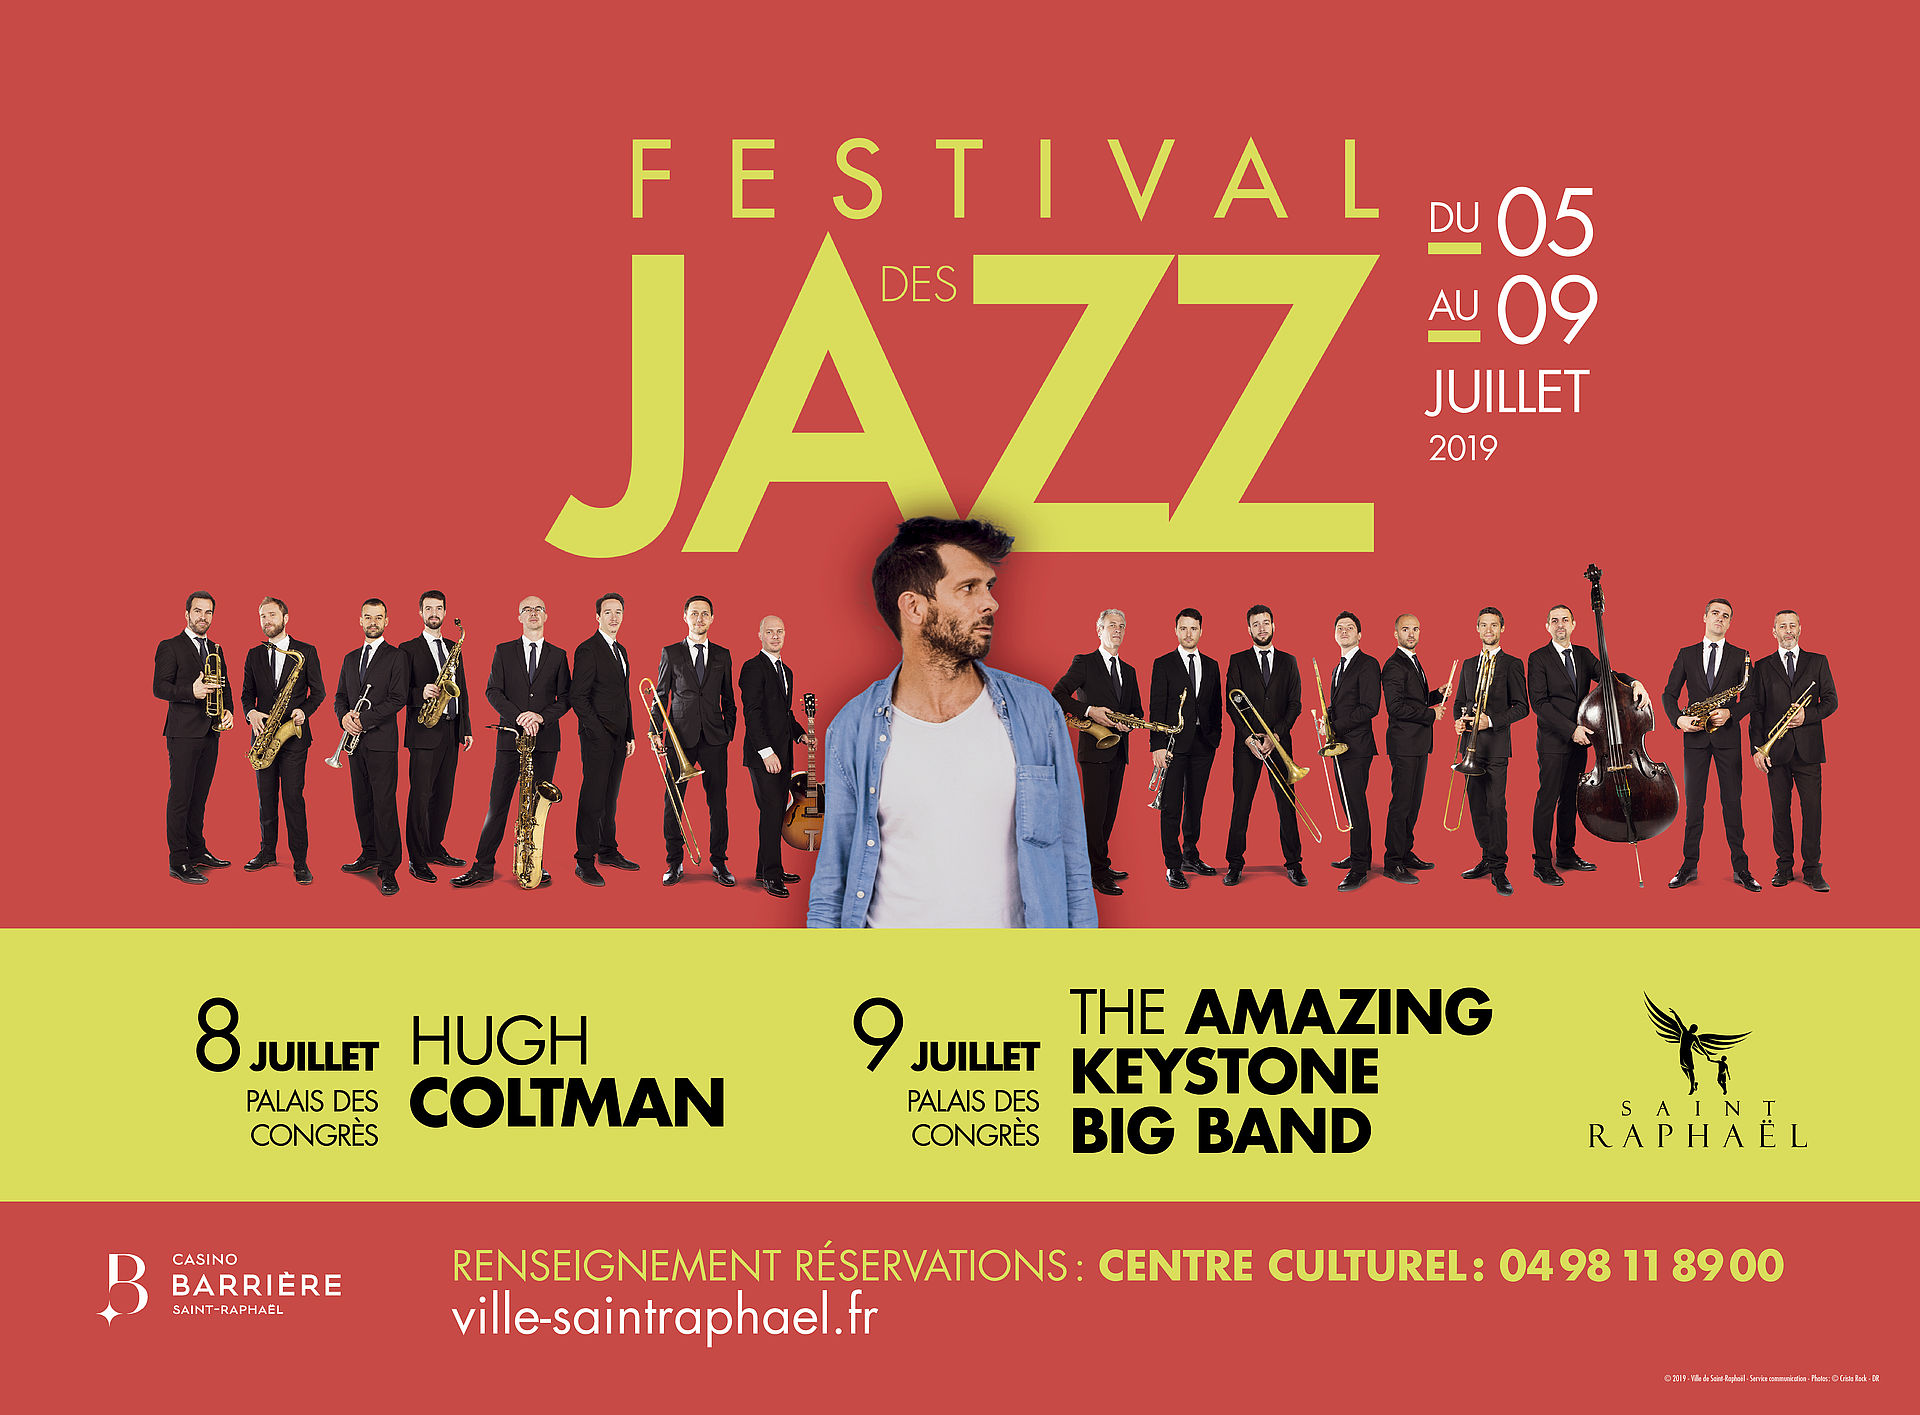 Festival des Jazz 120 000 mélomanes attendus à SaintRaphaël